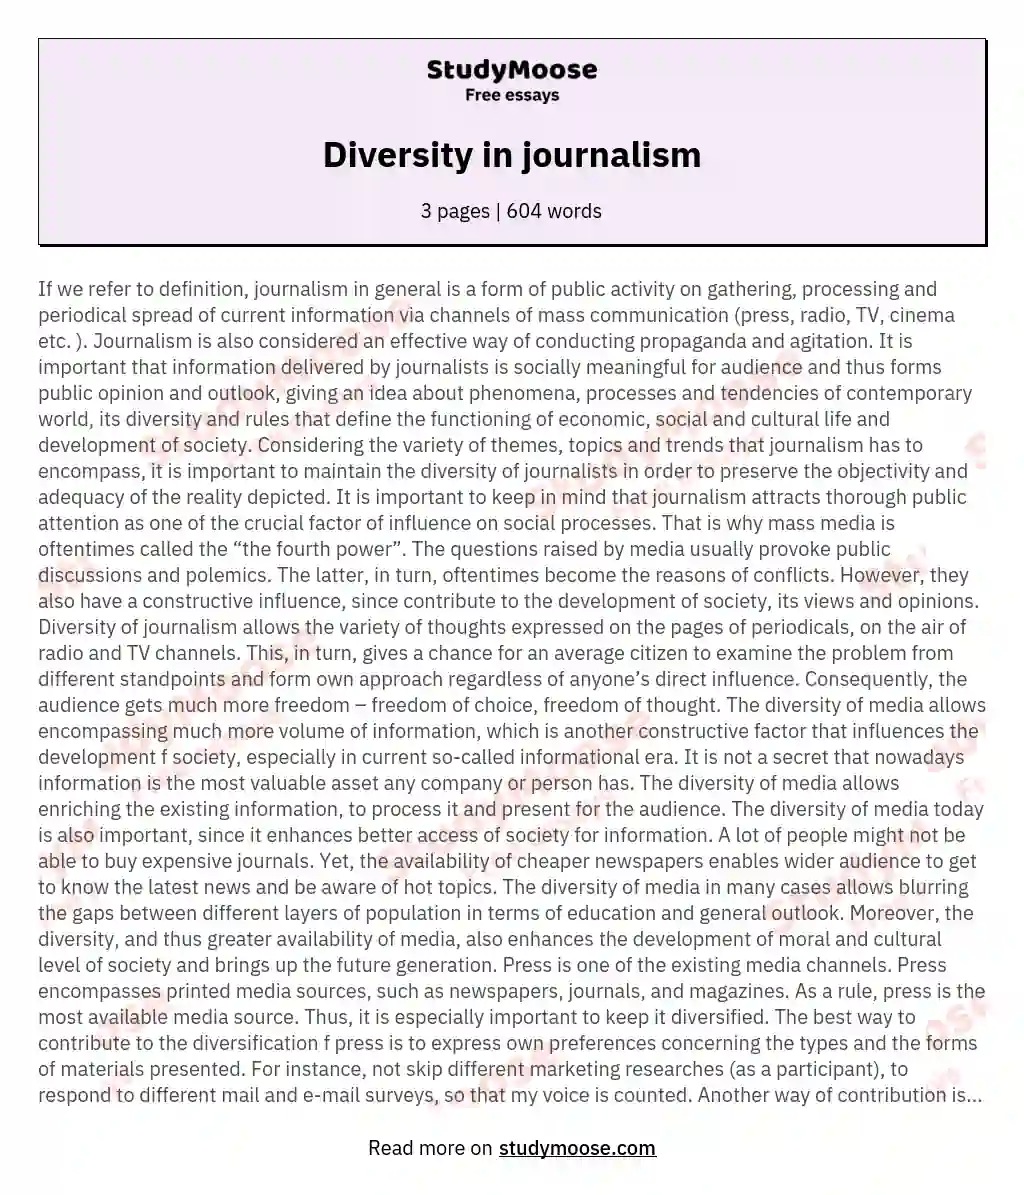 Diversity in journalism essay